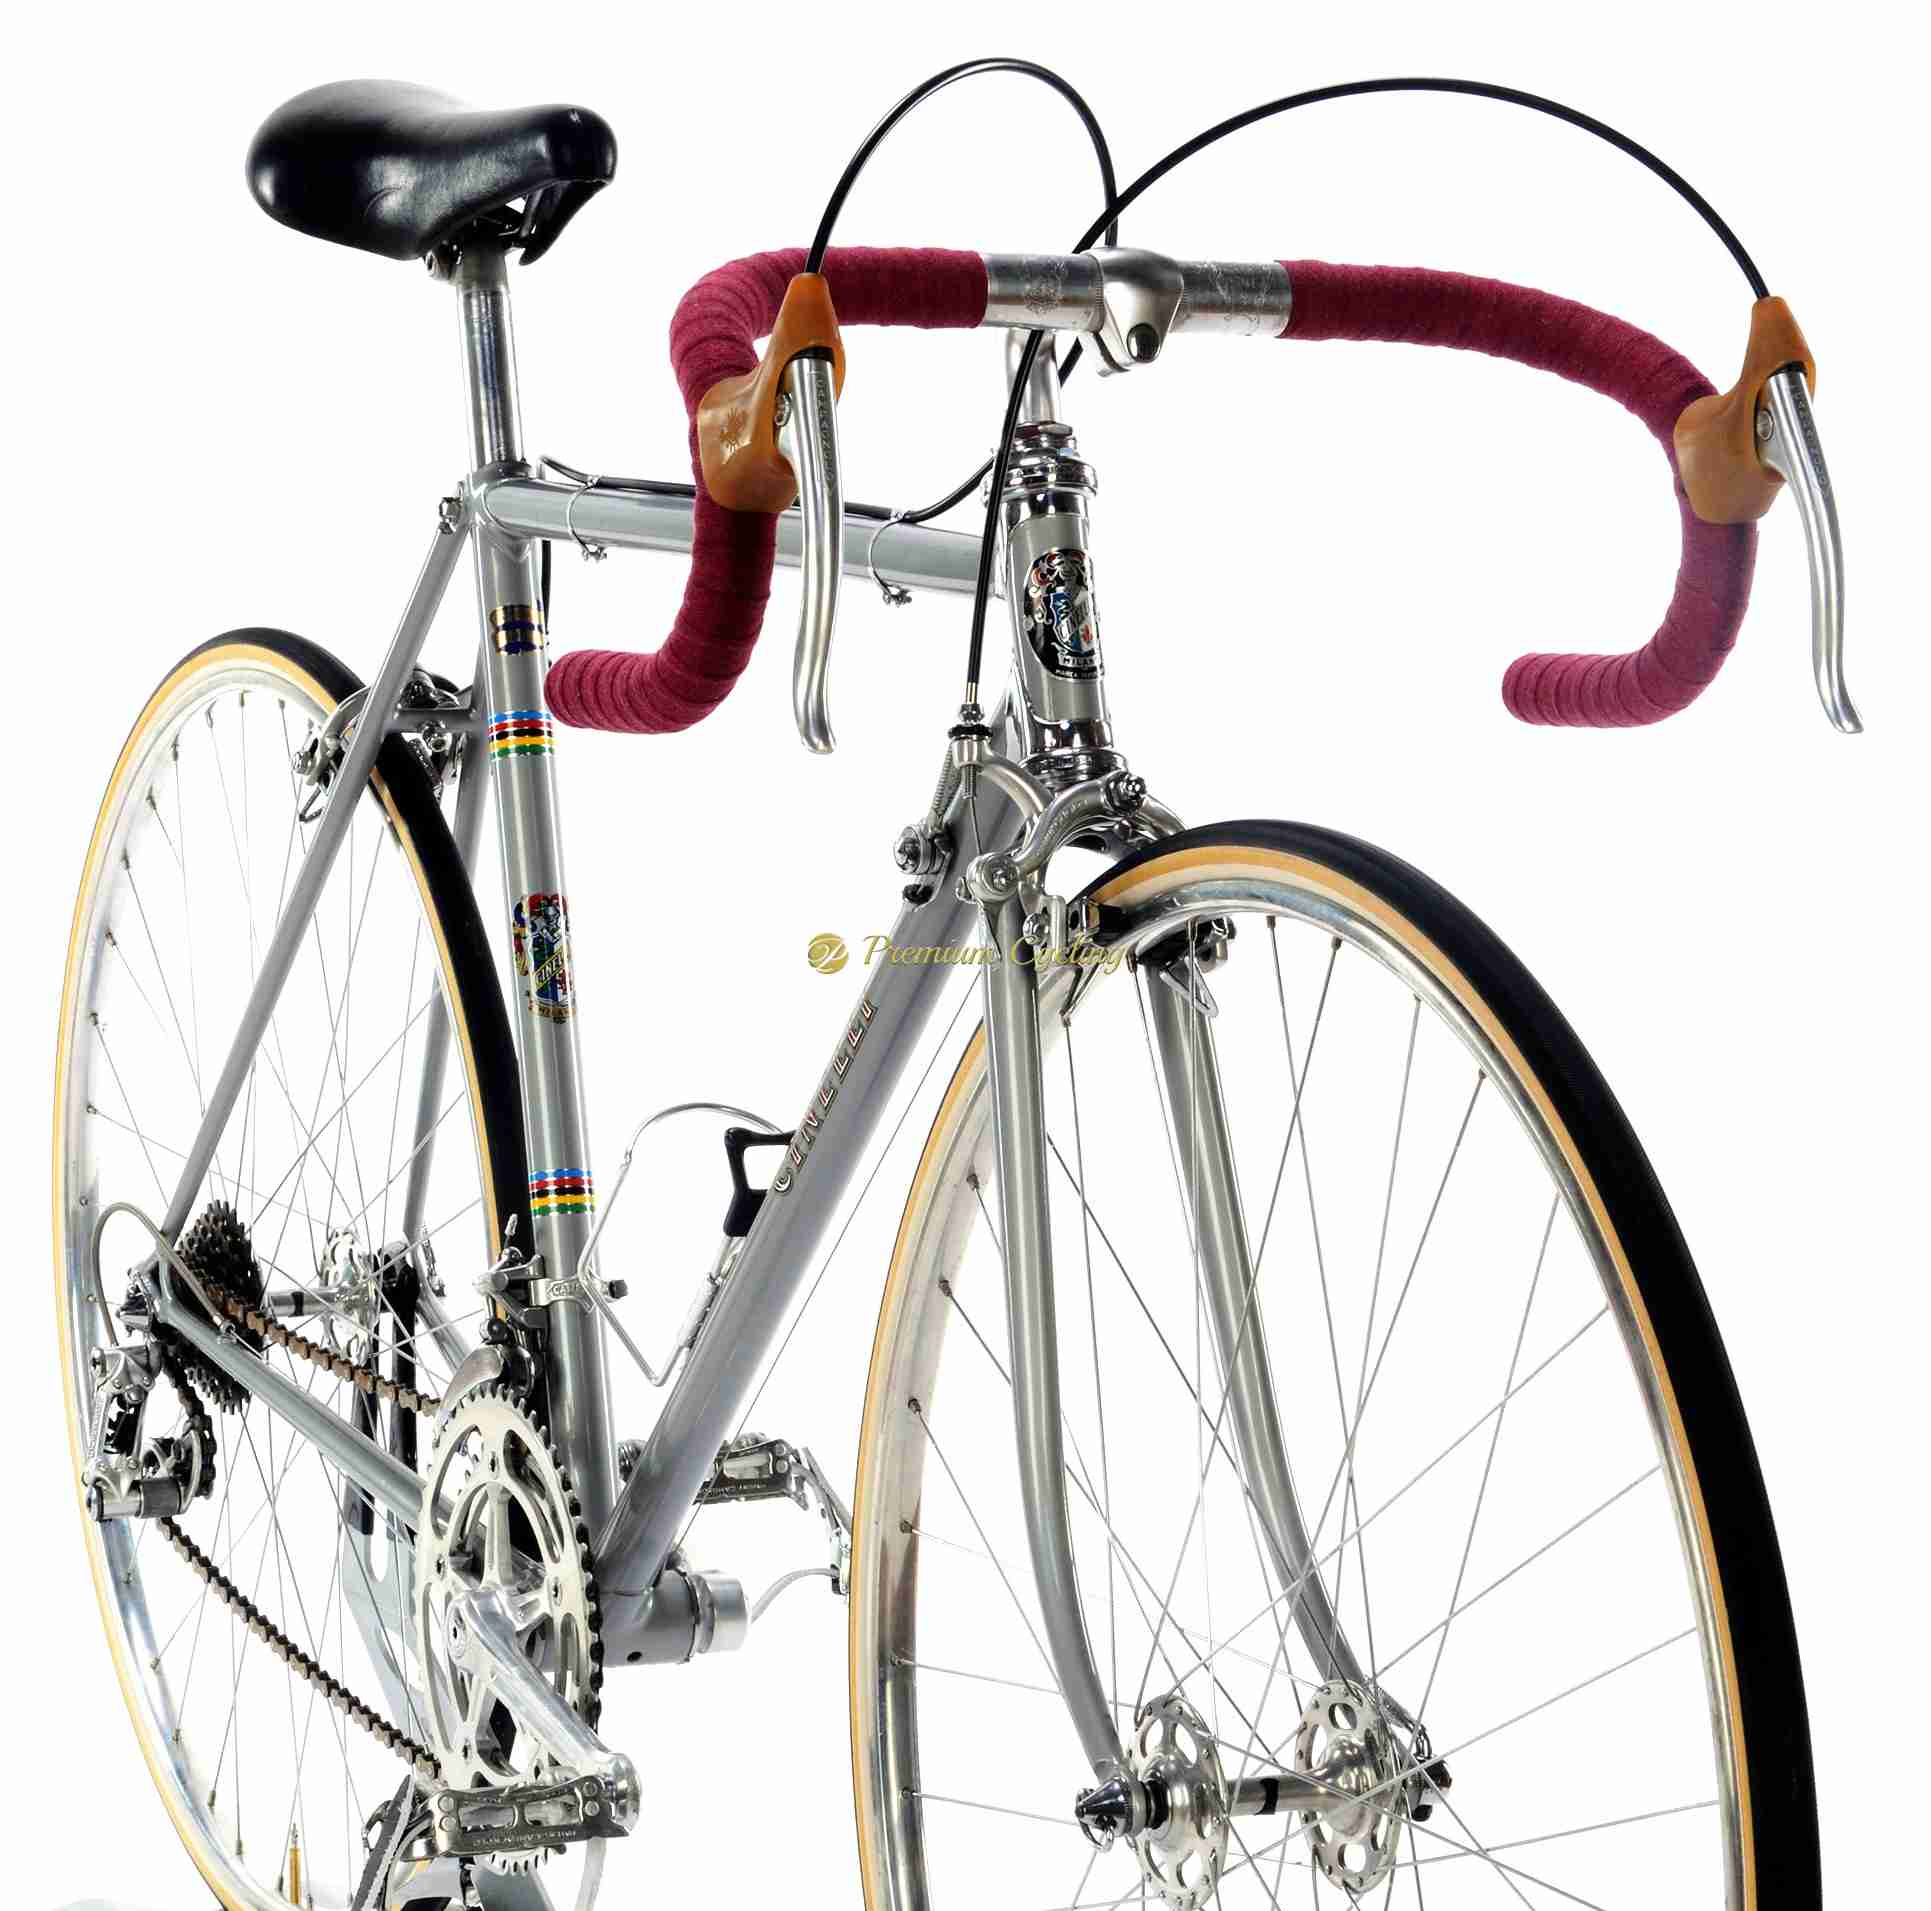 Campagnolo bicicletta epoca cinelli SC 1973 campagnolo nuovo record unicanitor 